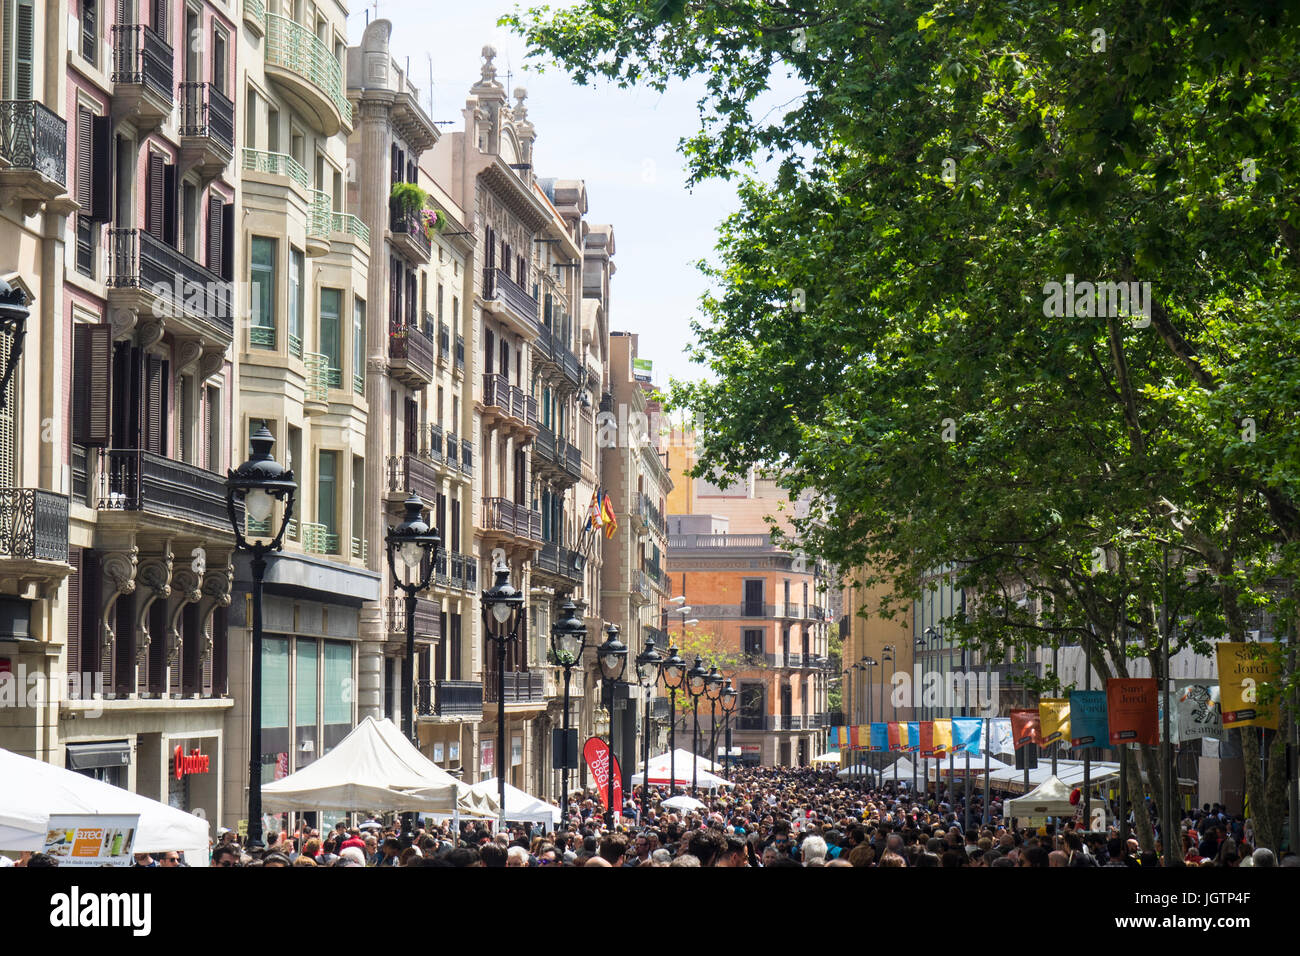 Crowds op people walking along Avinguda del Portal de l'Àngel on Sat Jordi Day, Barcelona, Spain. Stock Photo